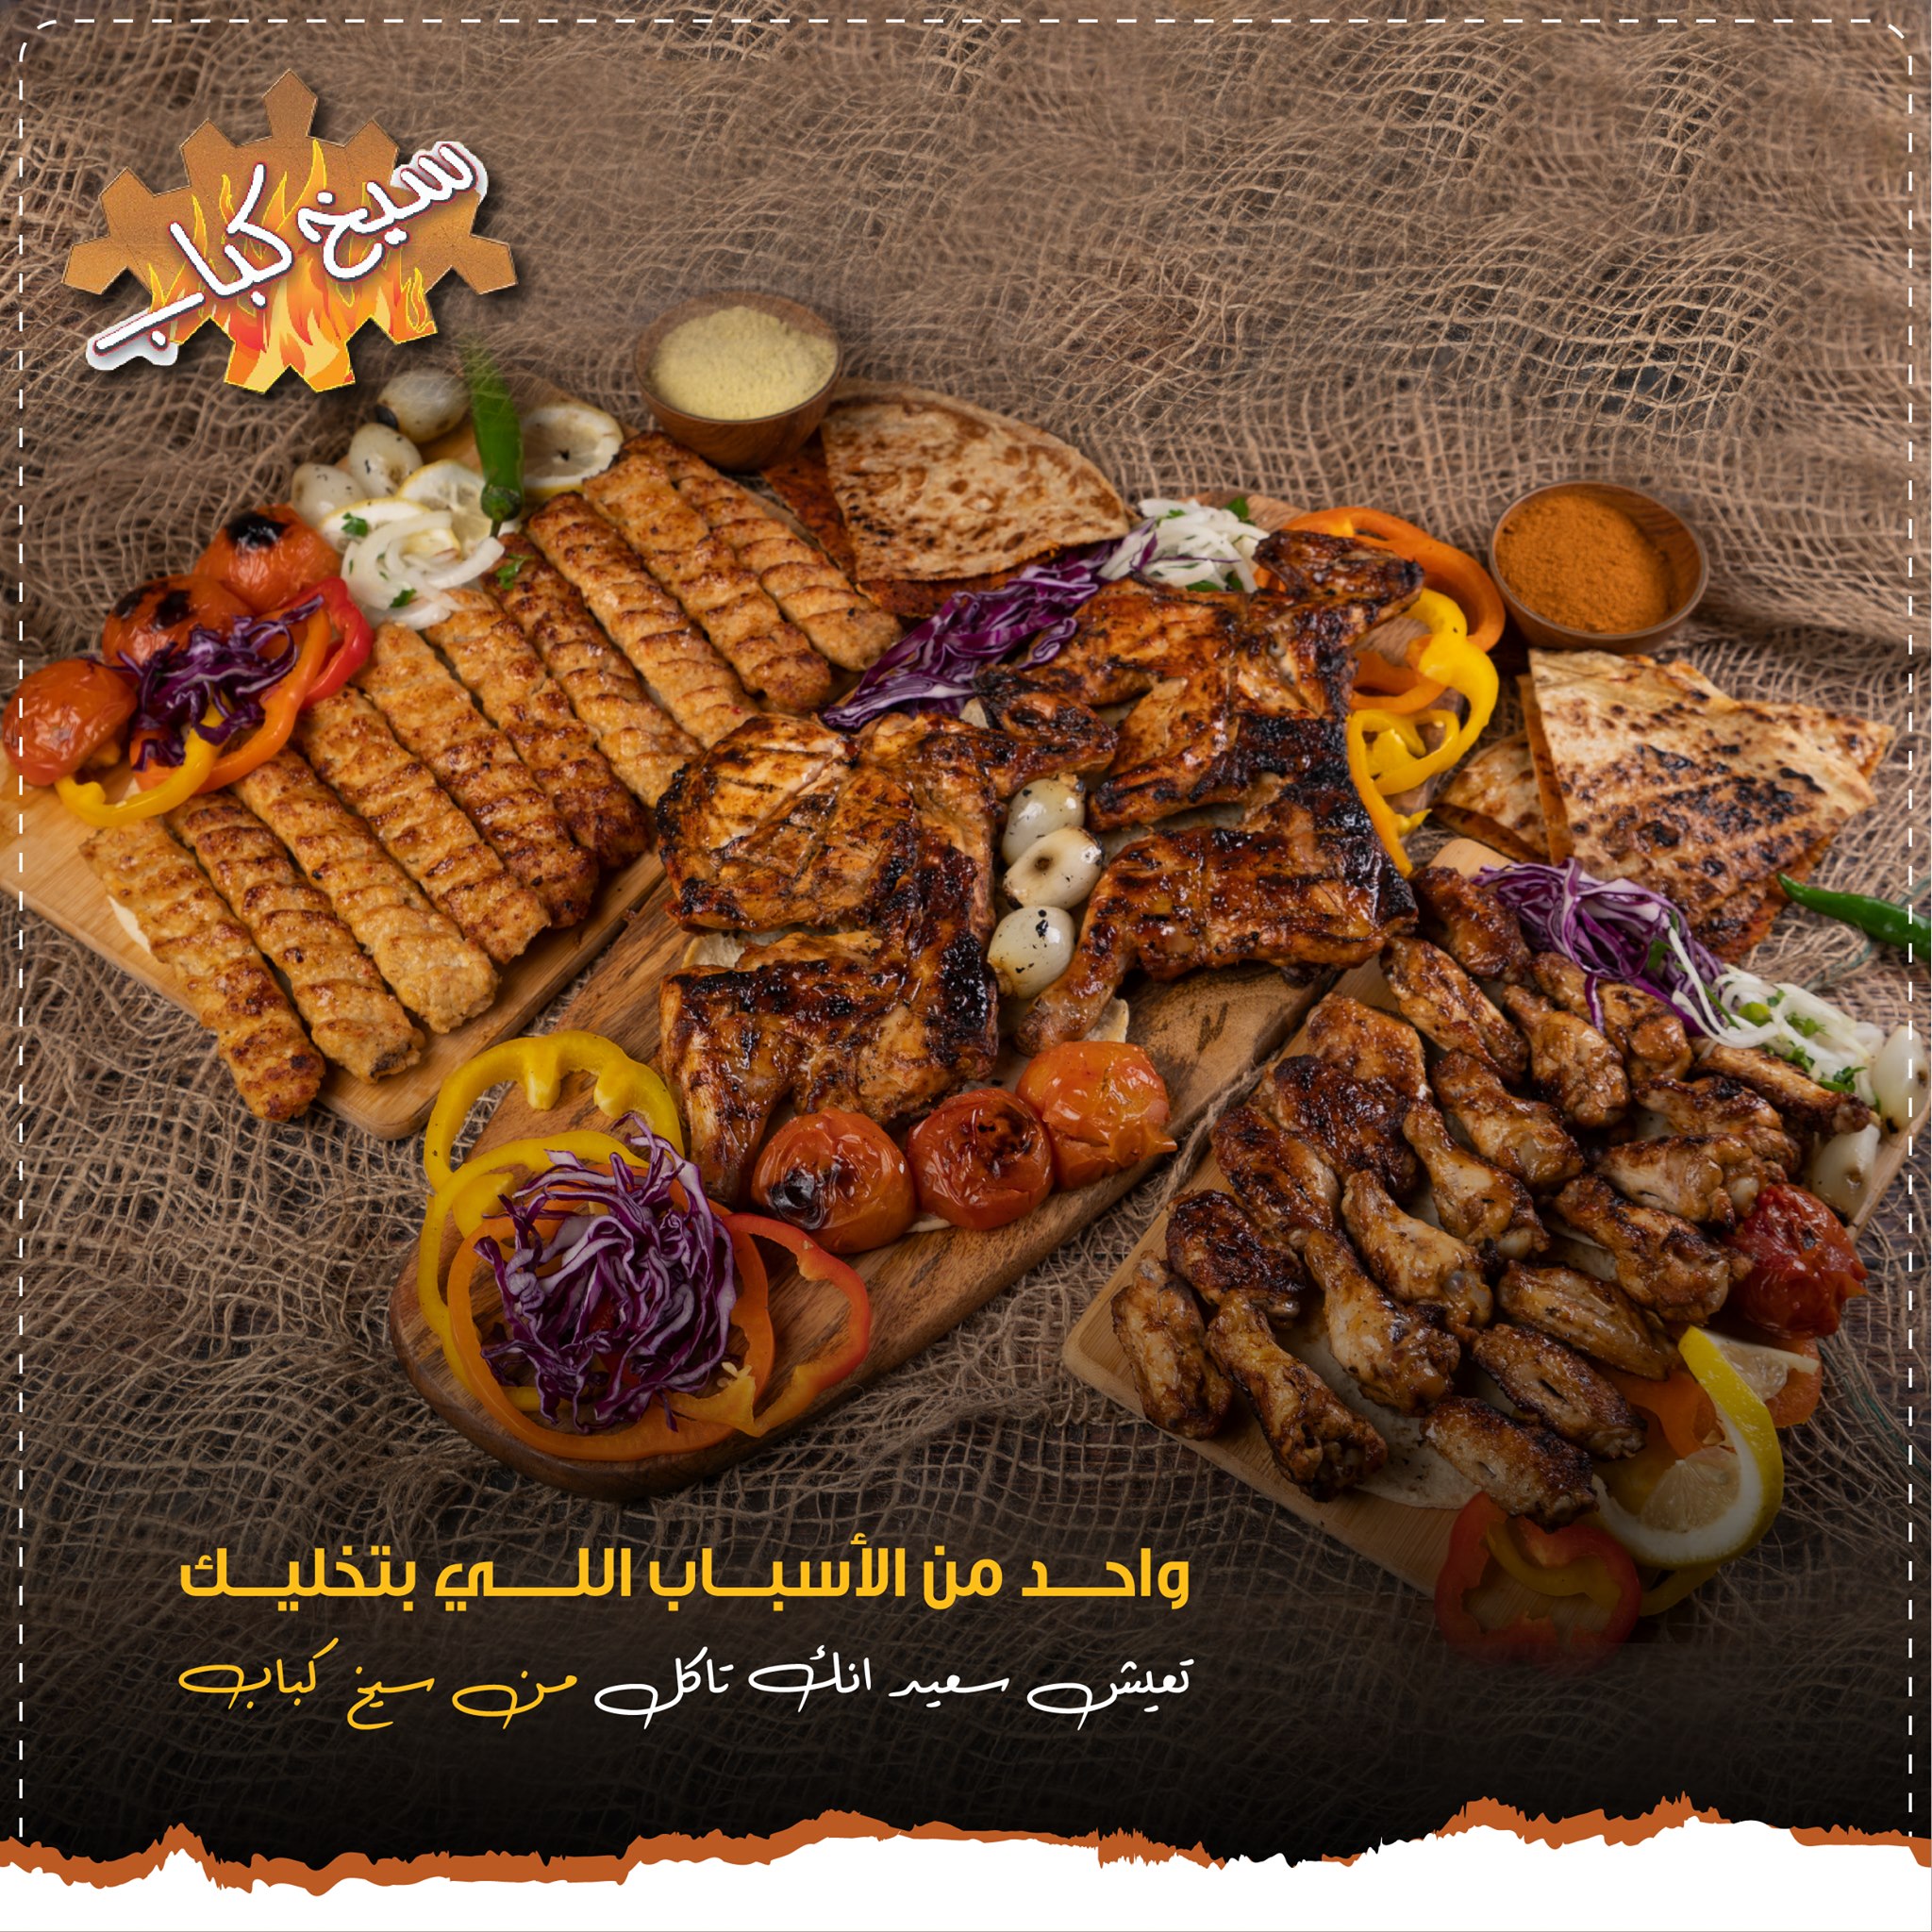  مطعم سيخ كباب - اطيب مطاعم المشاوي في عمان, الاردن